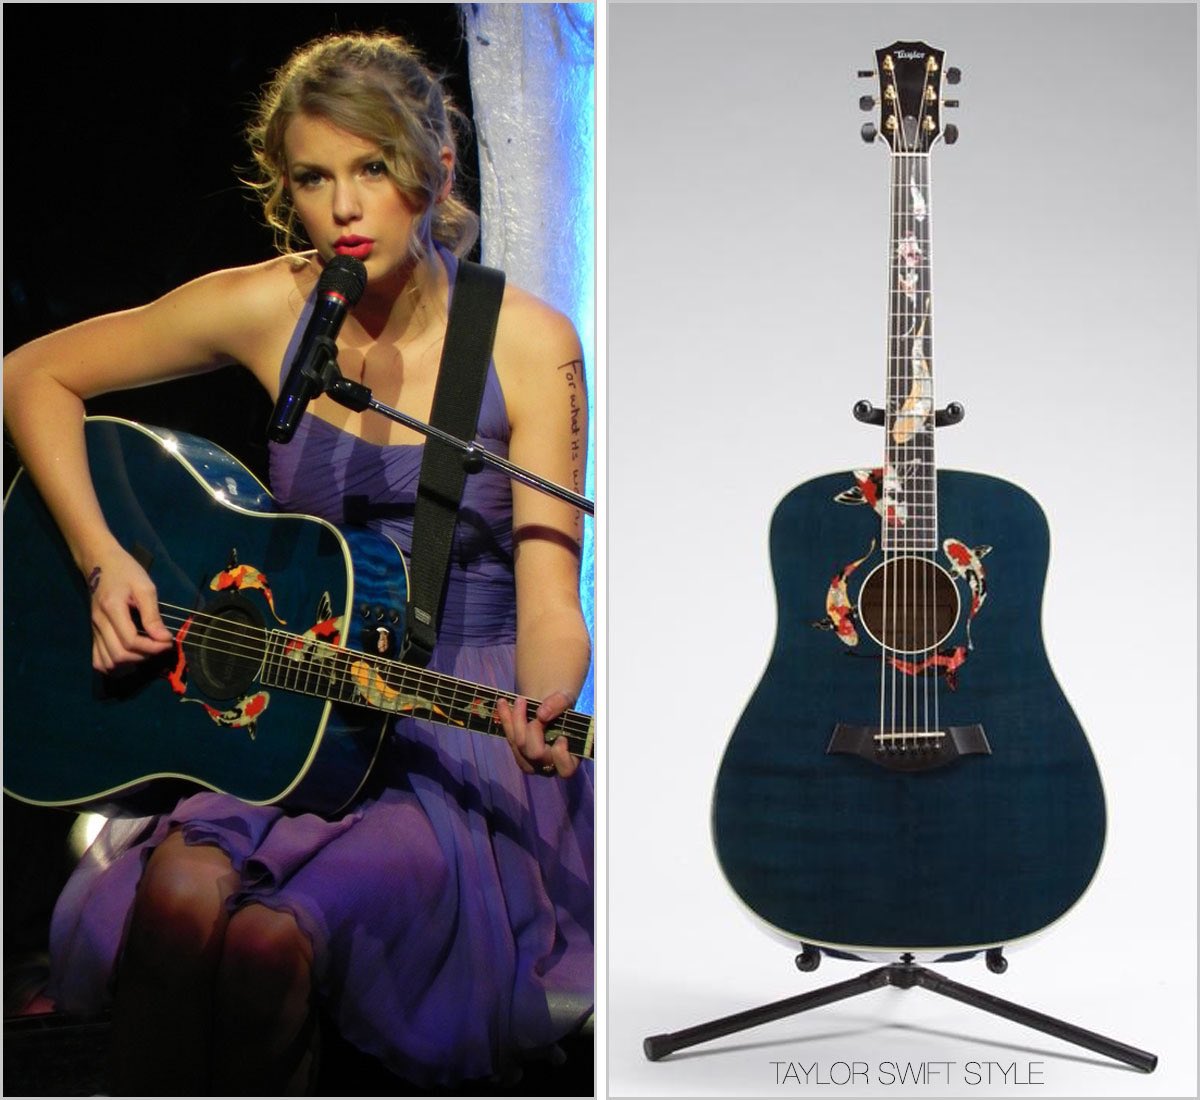 🚨 Aparentemente, os peixes que aparecem no clipe de 'Lavender Haze', fazem referência ao violão utilizado por Taylor Swift na era Speak Now. #LavenderHazeMusicVideo